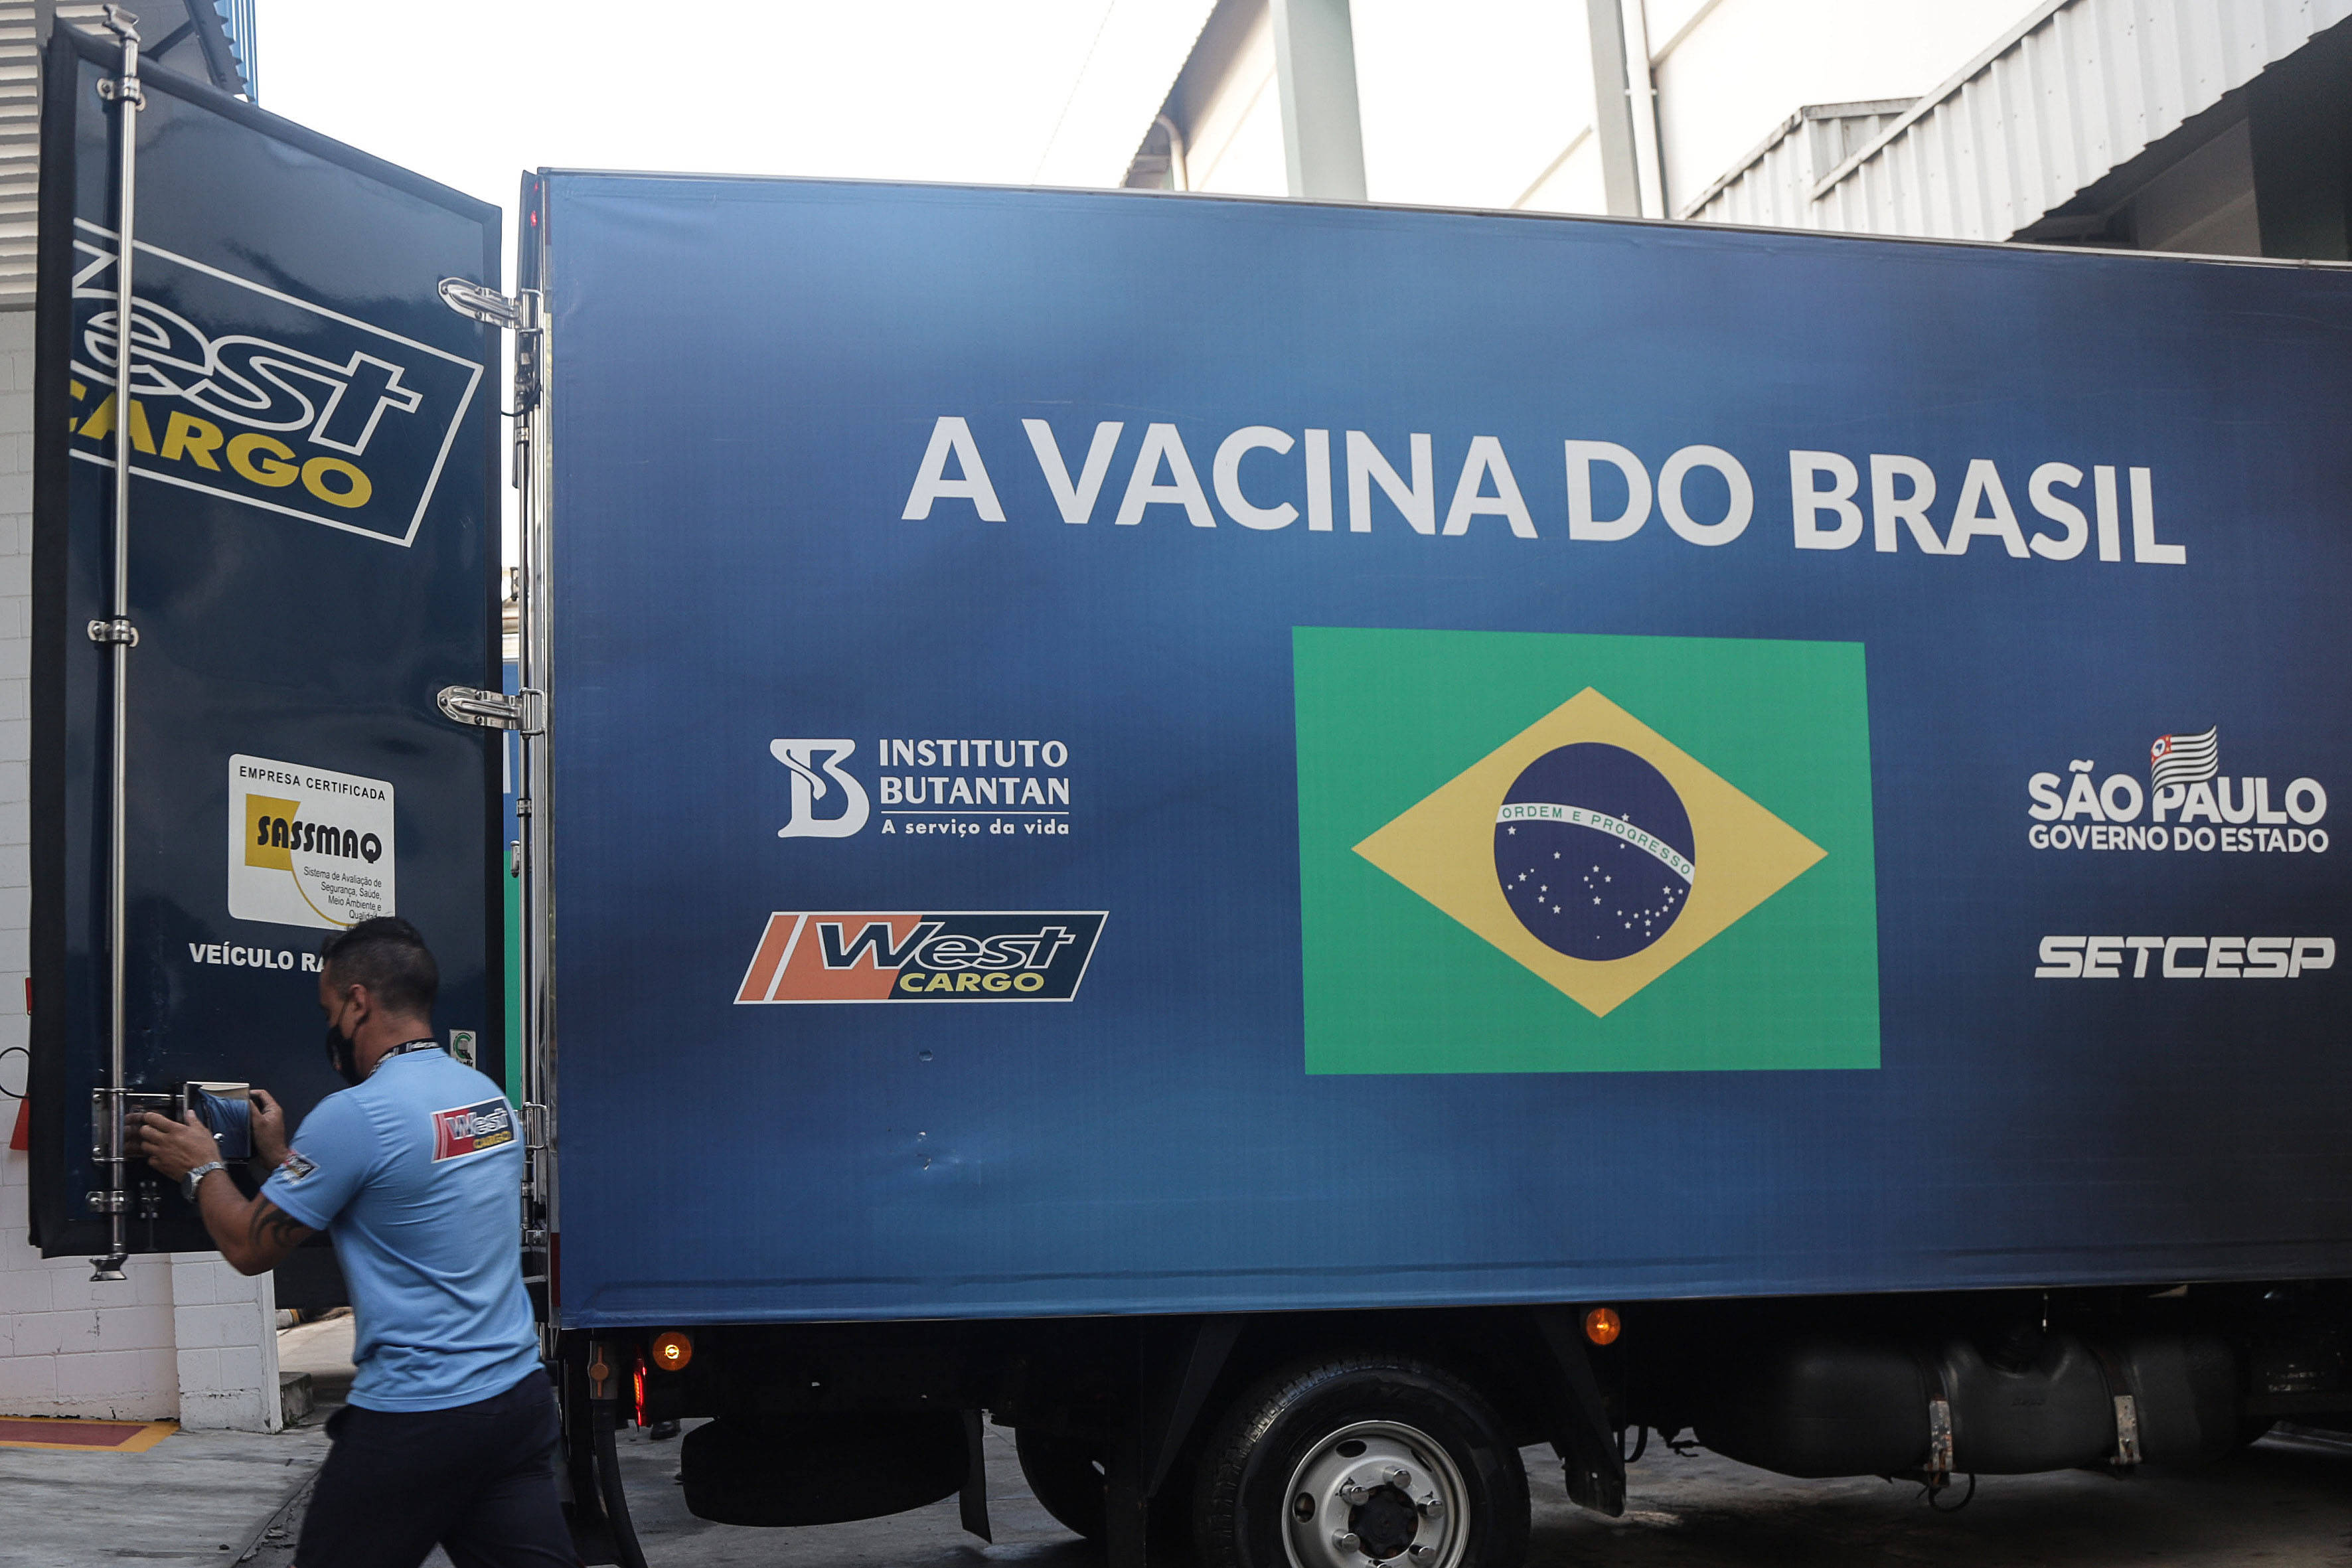 巴西布坦坦研究所向巴西卫生部交付克尔来福疫苗